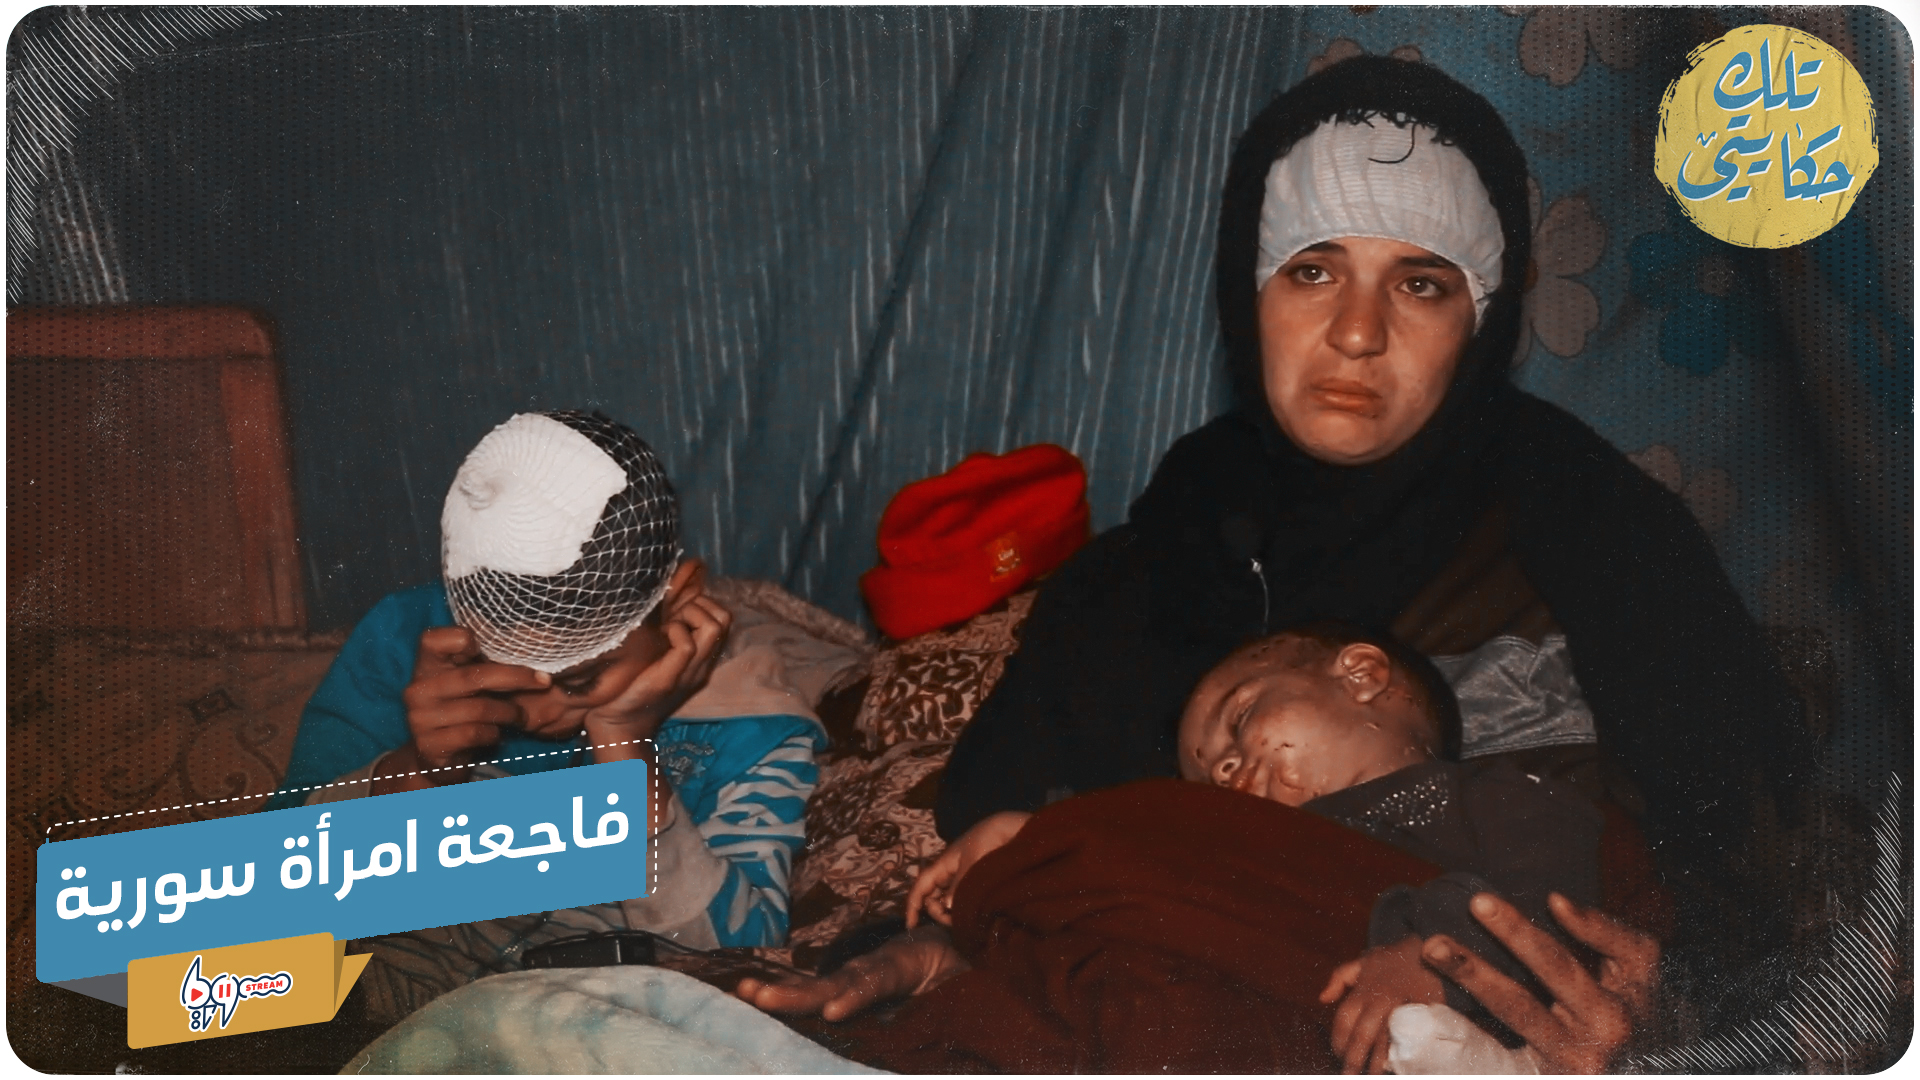 فاجعة امرأة سورية فقدت 6 من أفراد عائلتها